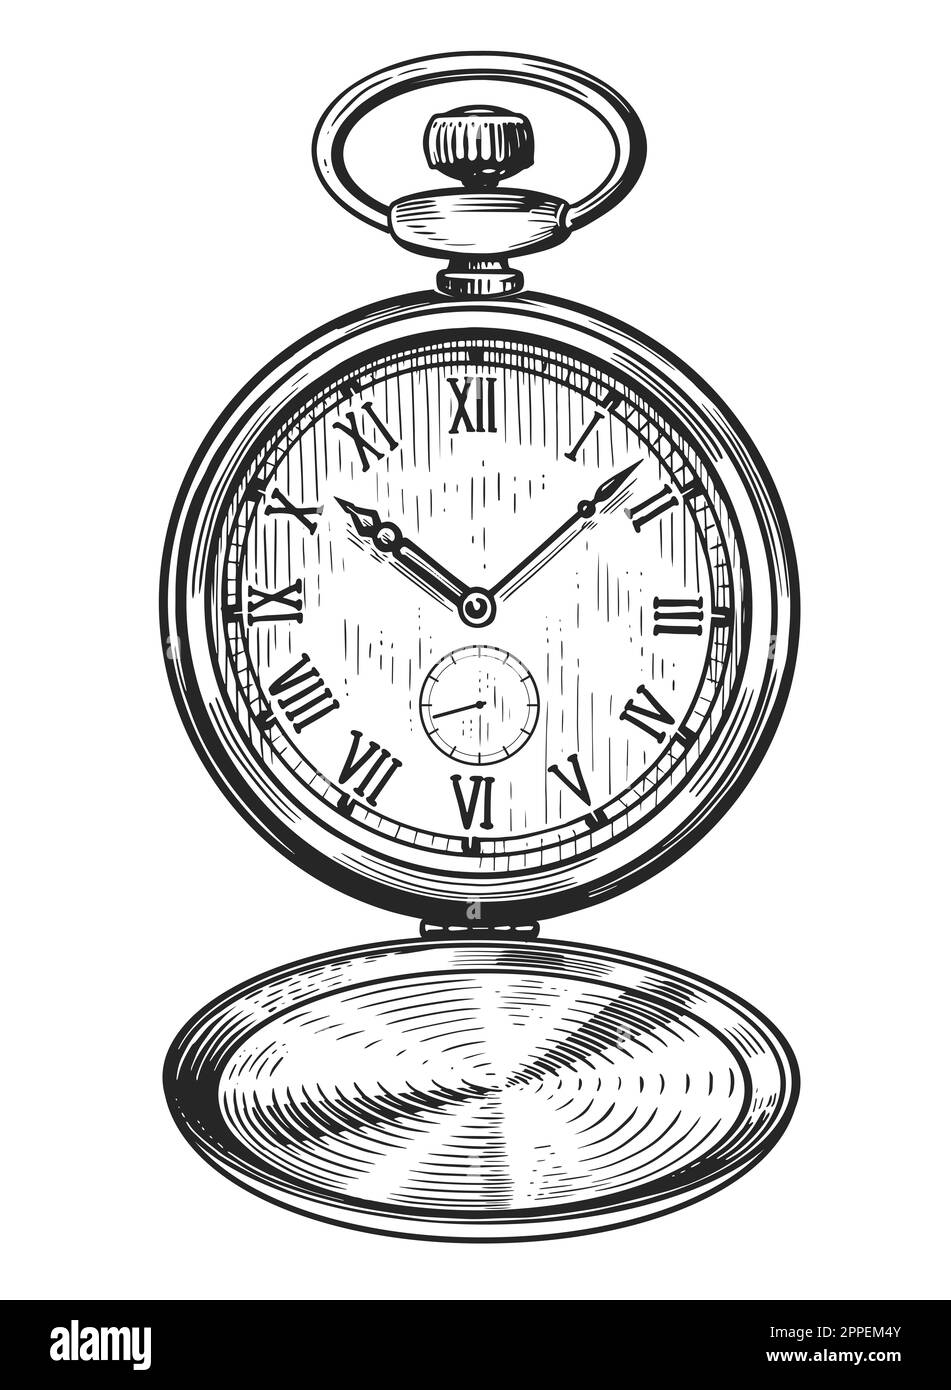 Montre de poche mécanique classique. Horloge ancienne de style gravure ancien. Illustration d'esquisse vintage dessinée à la main Banque D'Images